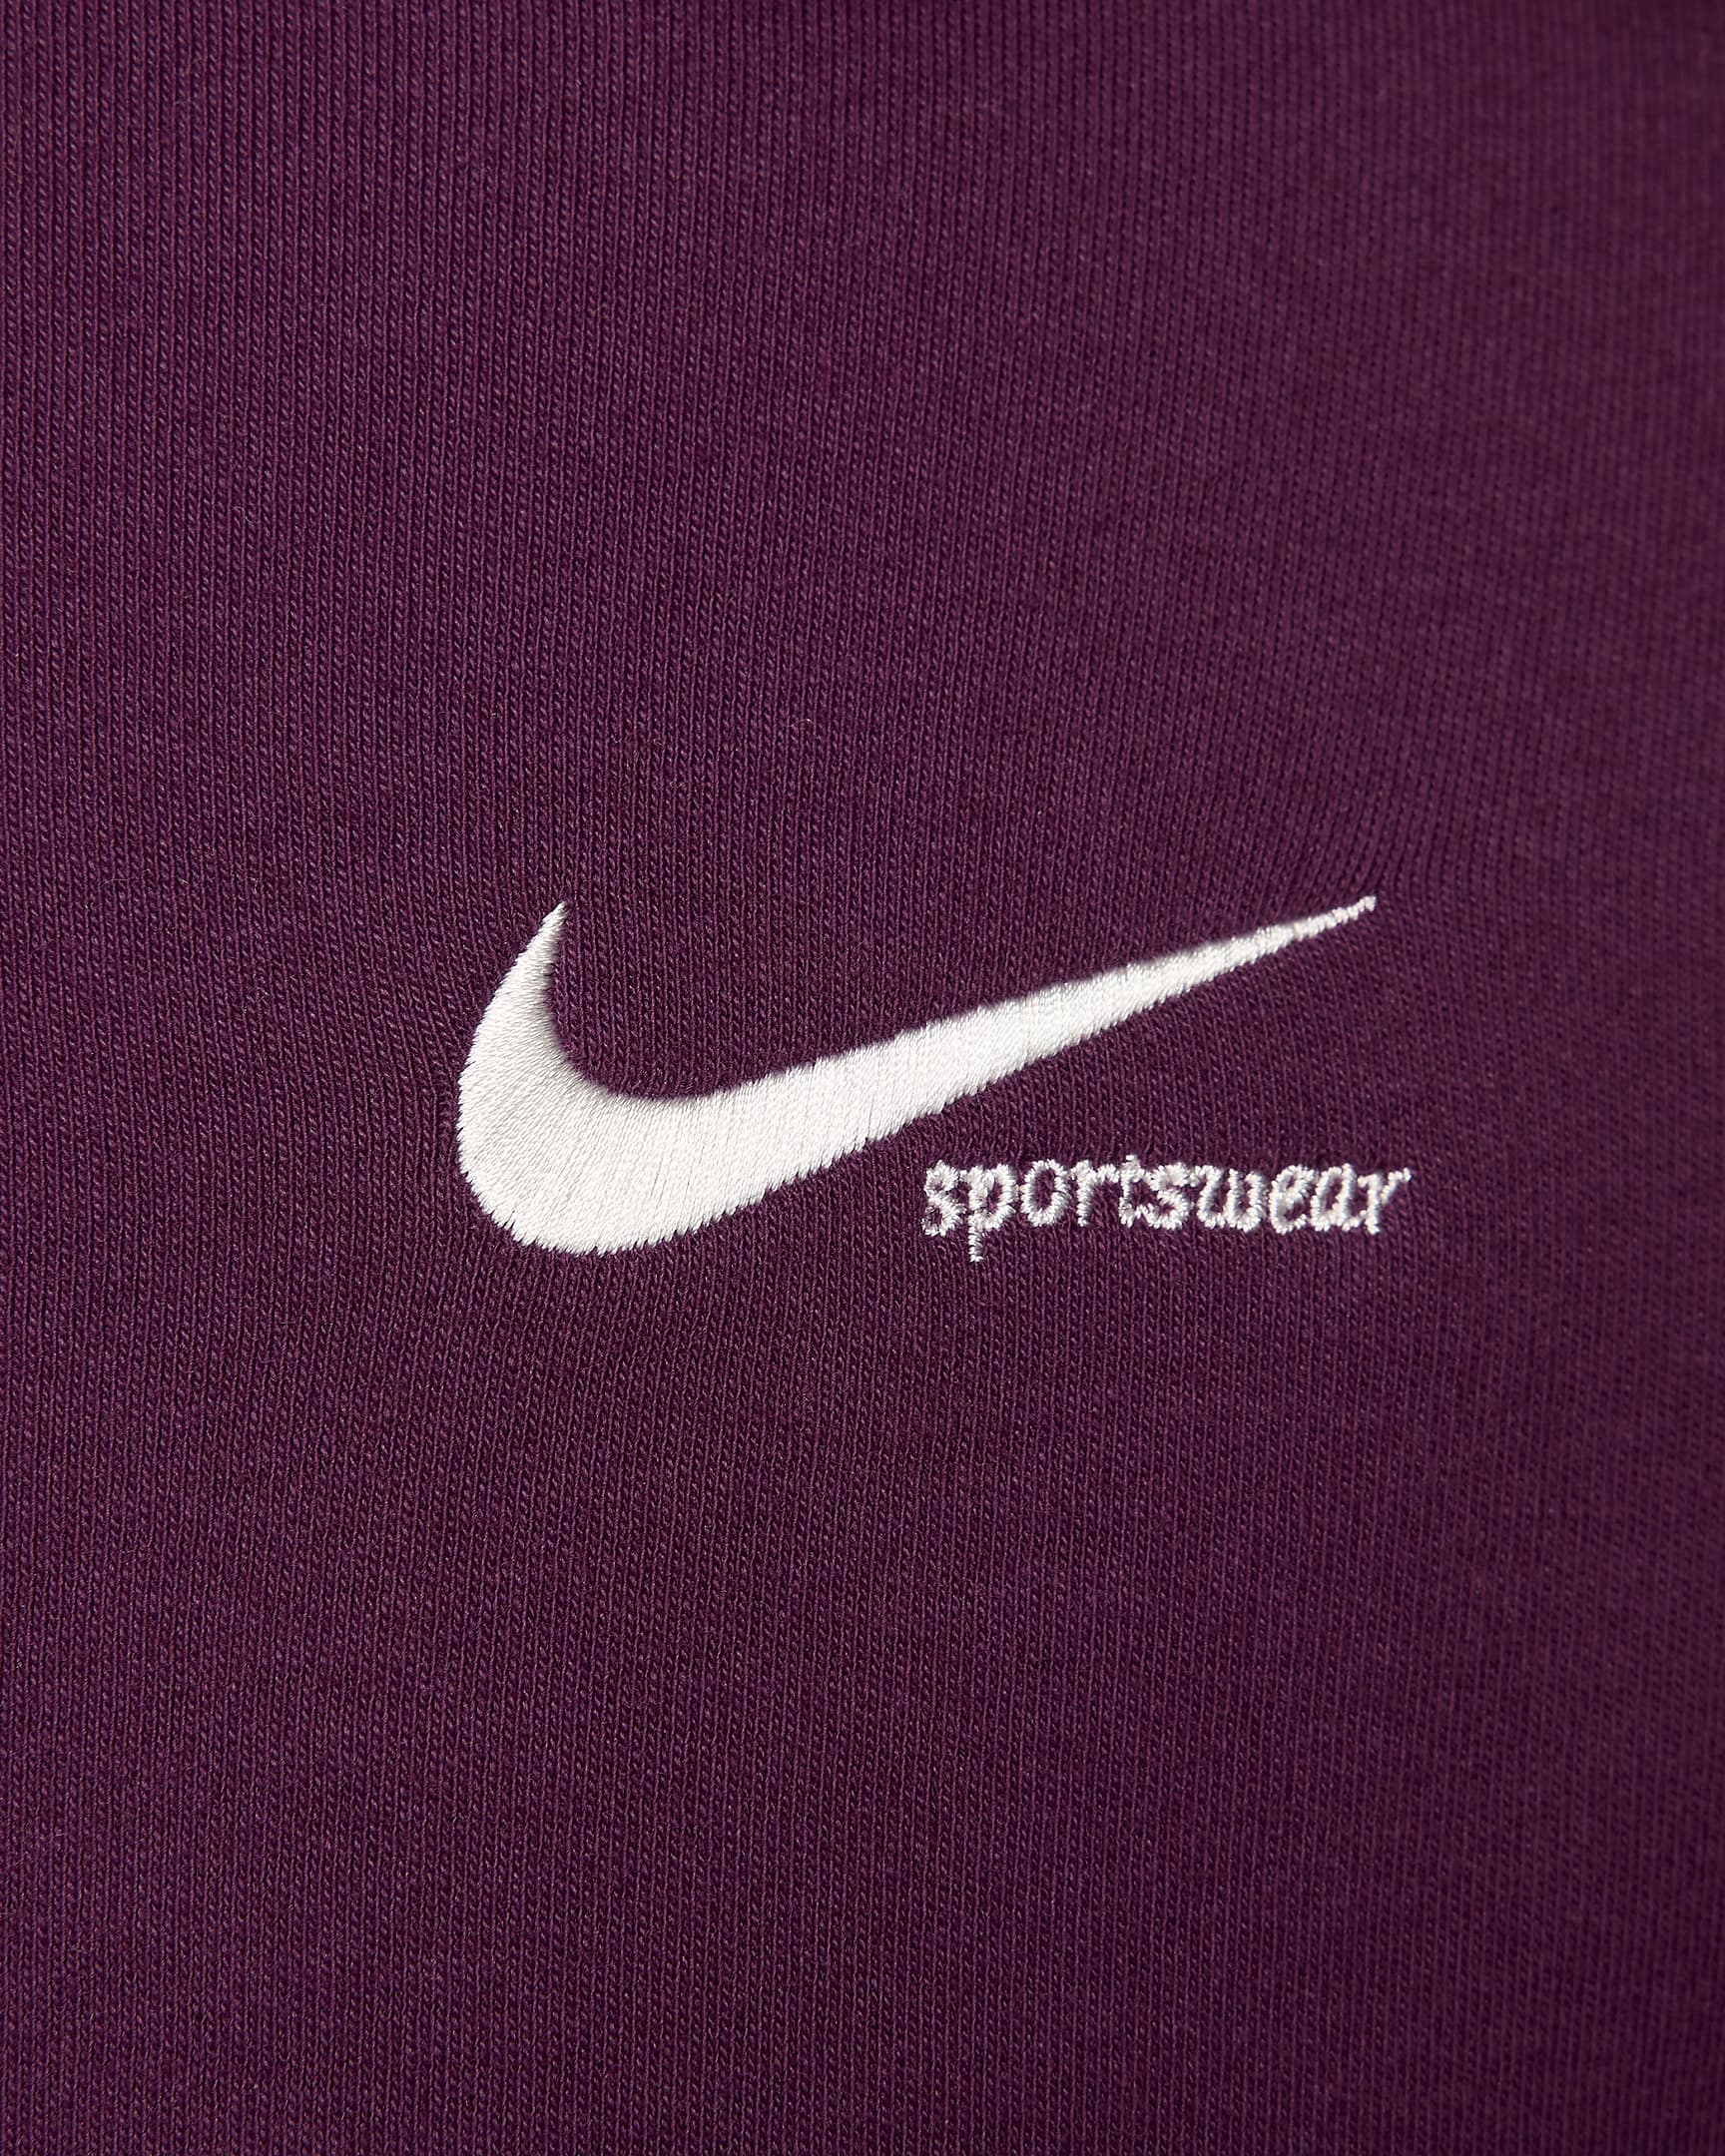 Nike Sportswear Collection Women's Mock-Neck Top. Nike UK